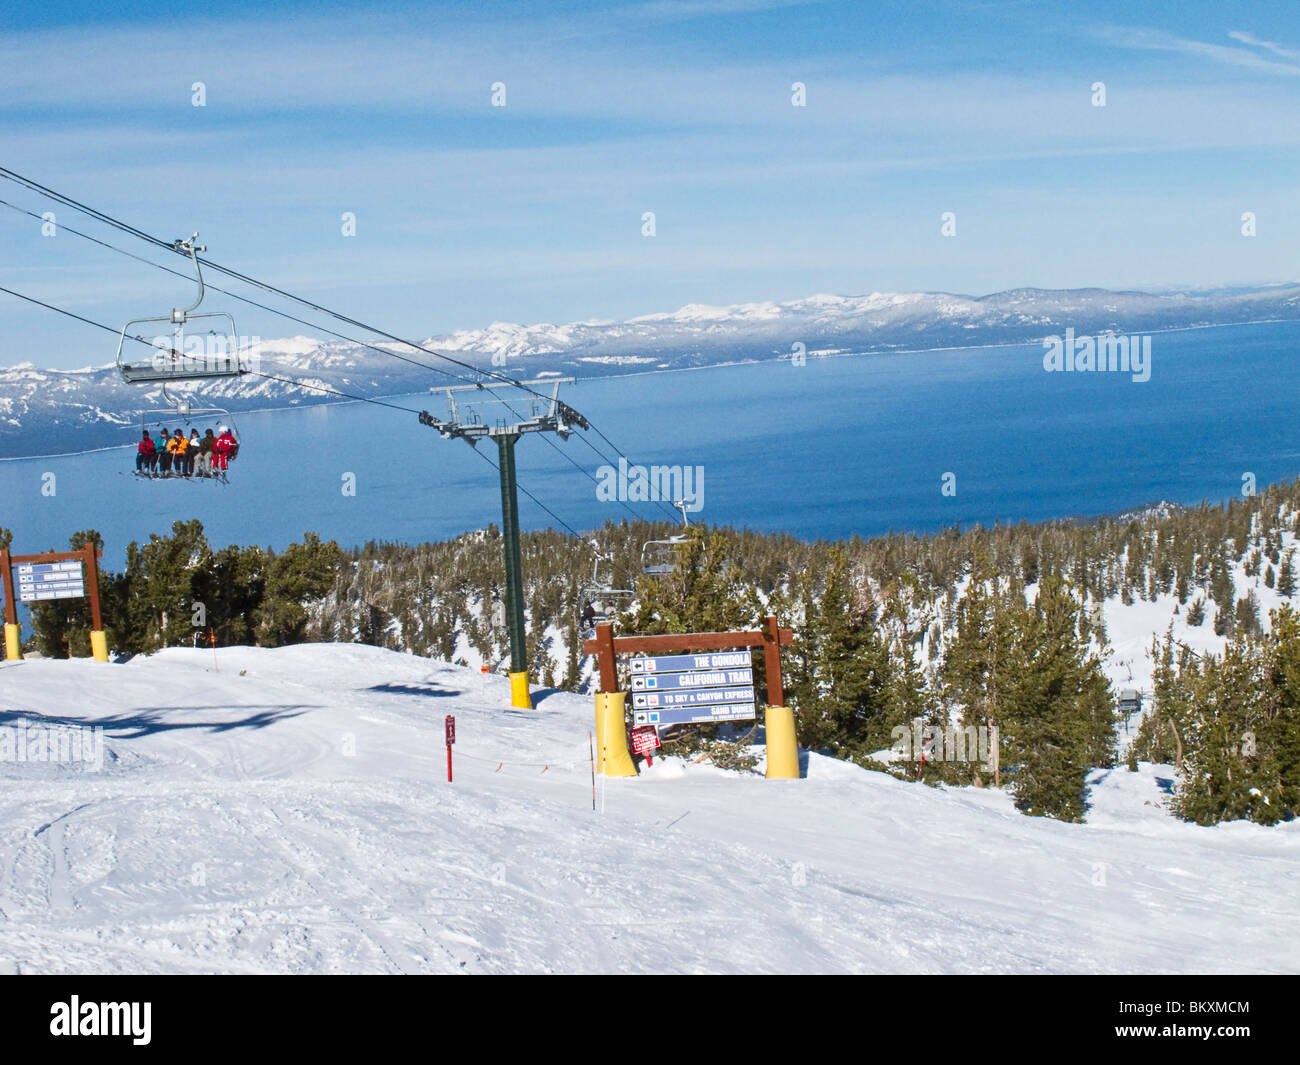 Skifahrer am Skilift von halbem Weg bis die Heavenly Mountain Resort Ski-Pisten im Winter. Lake Tahoe ist im Hintergrund. Stockfoto